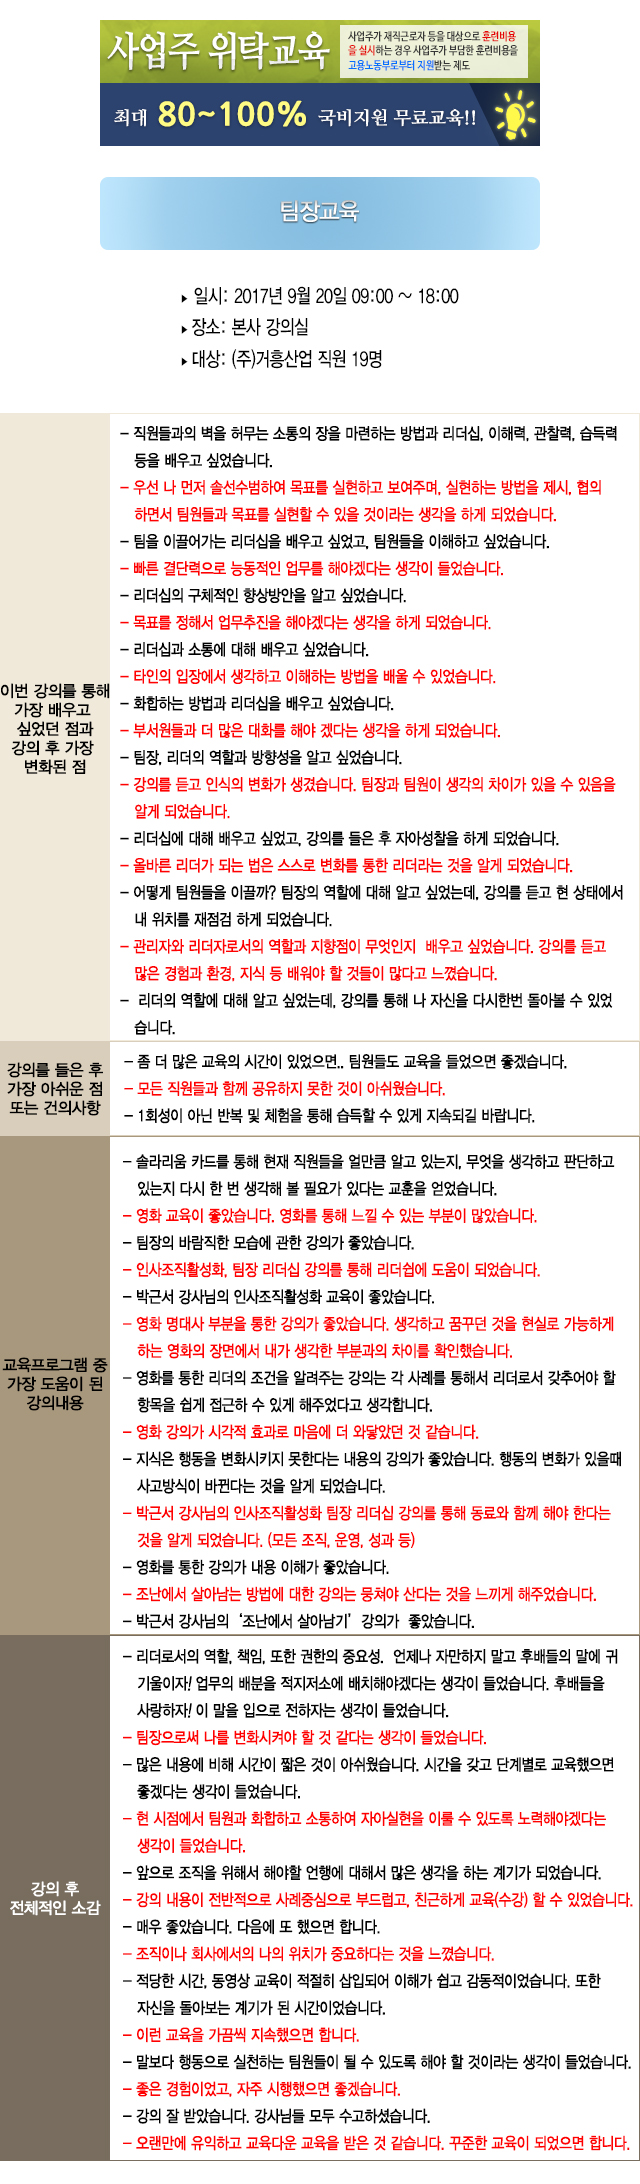 한국중앙인재개발원 후기 거흥산업.jpg